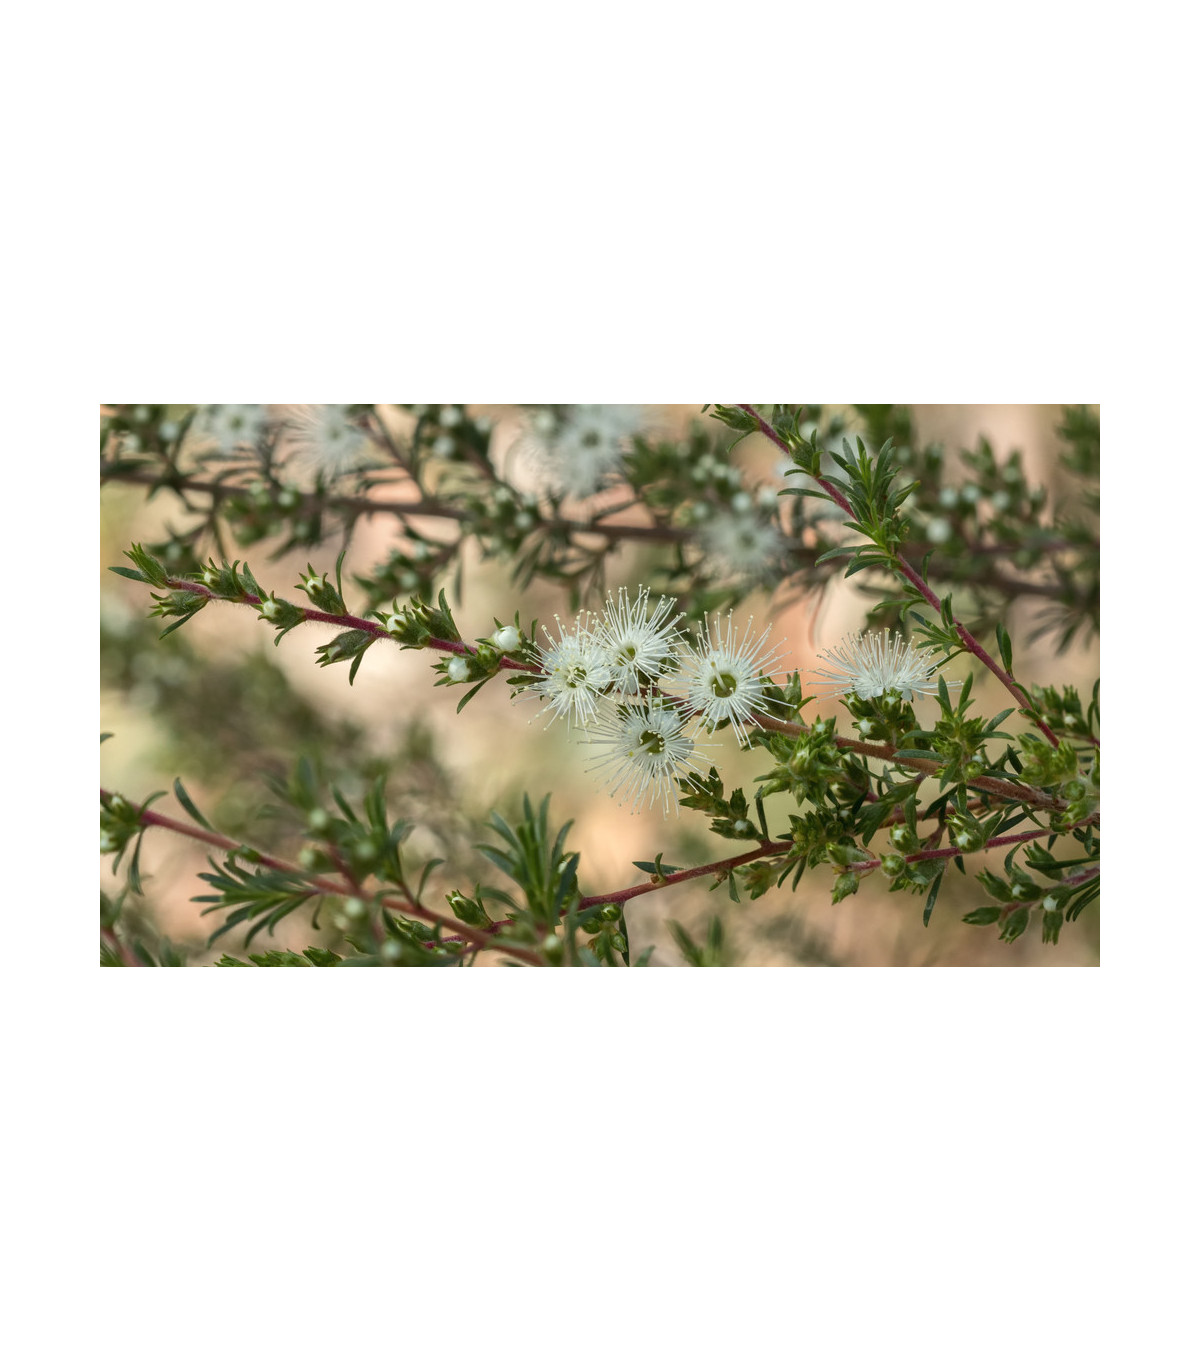 Kanuka - Biely čajovníkový strom - Kunzea ericoides - semiačka - 6 ks